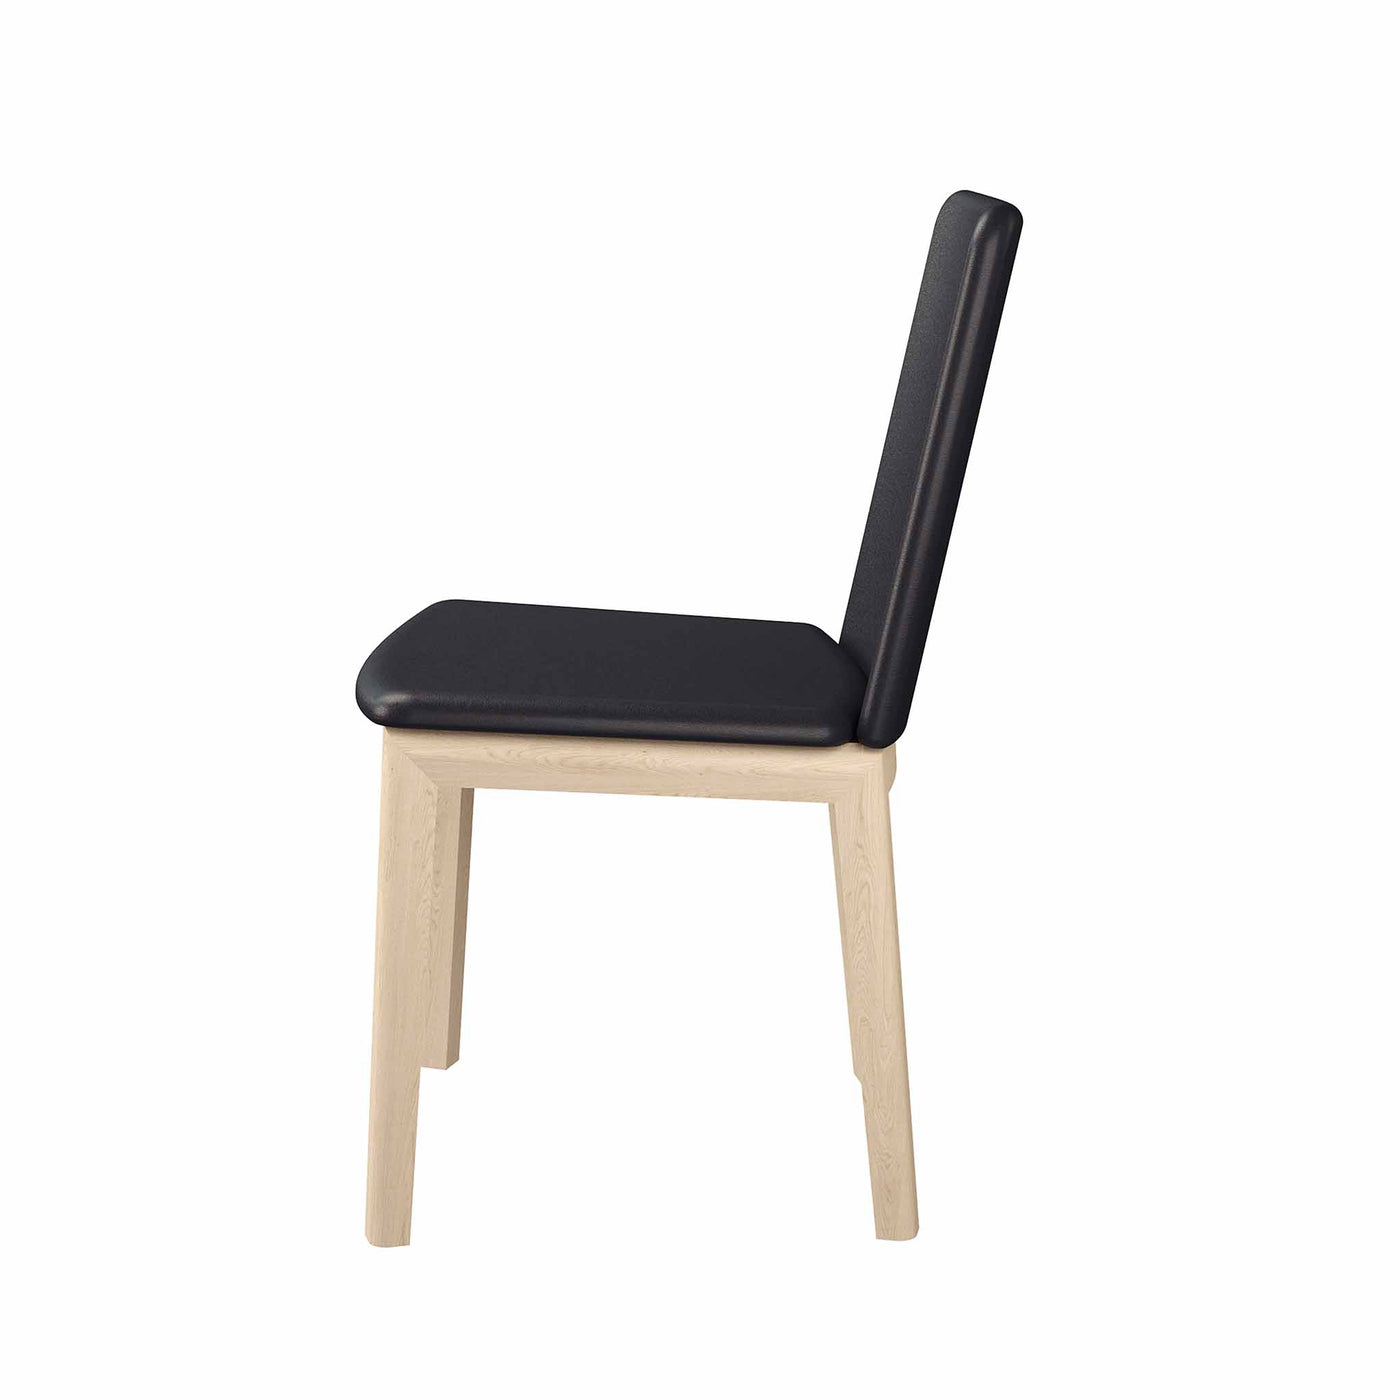 SM 47 spisebordsstol i sort læder med hvidolieret ben i eg fra Skovby